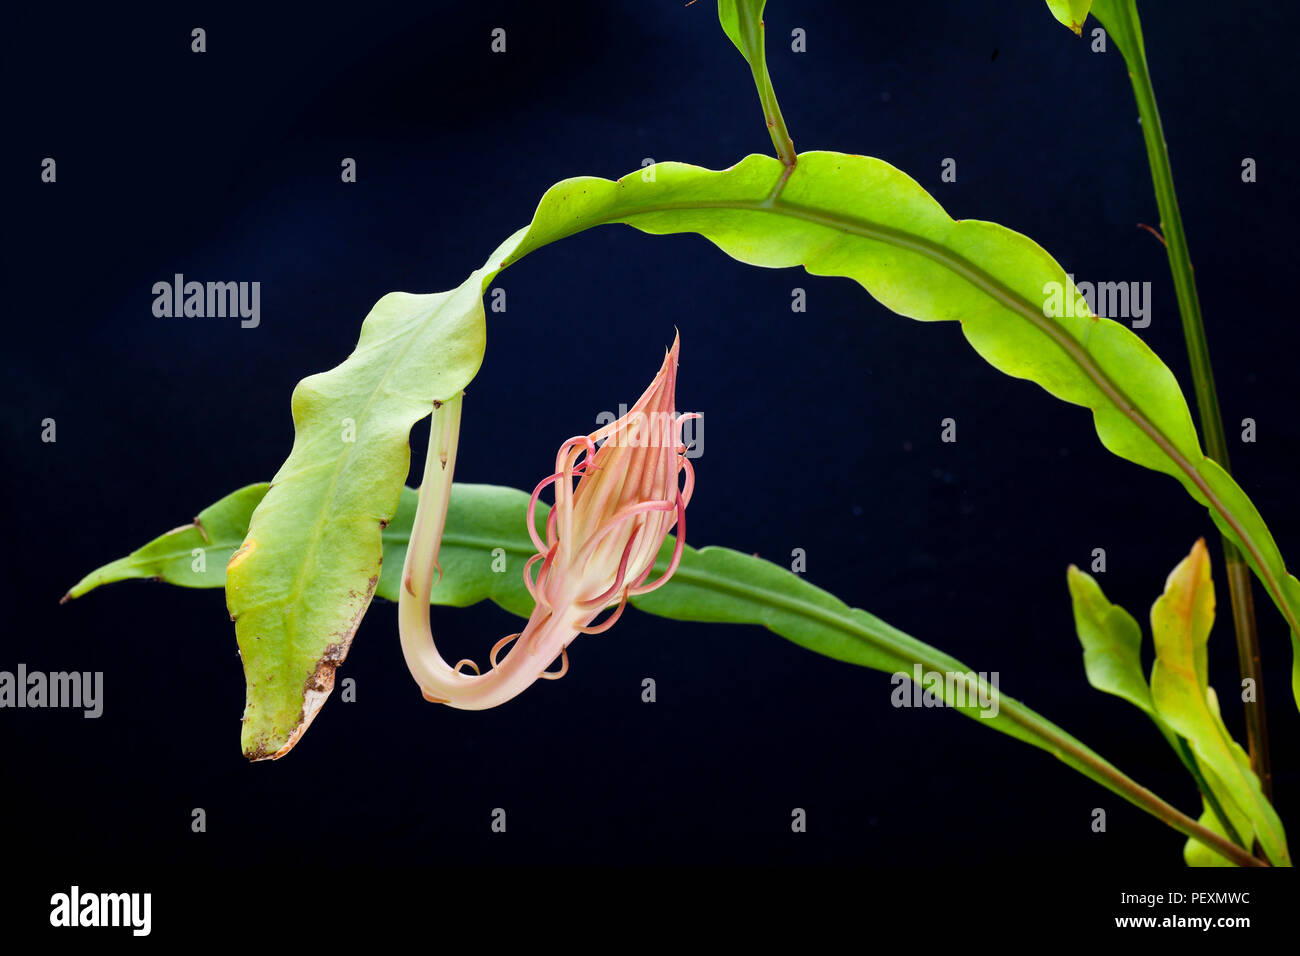 Reine de la nuit, Epiphyllum oxypetalum, Dutchman's pipe Cactus, Night Blooming Cereus dans les boutons floraux. Banque D'Images